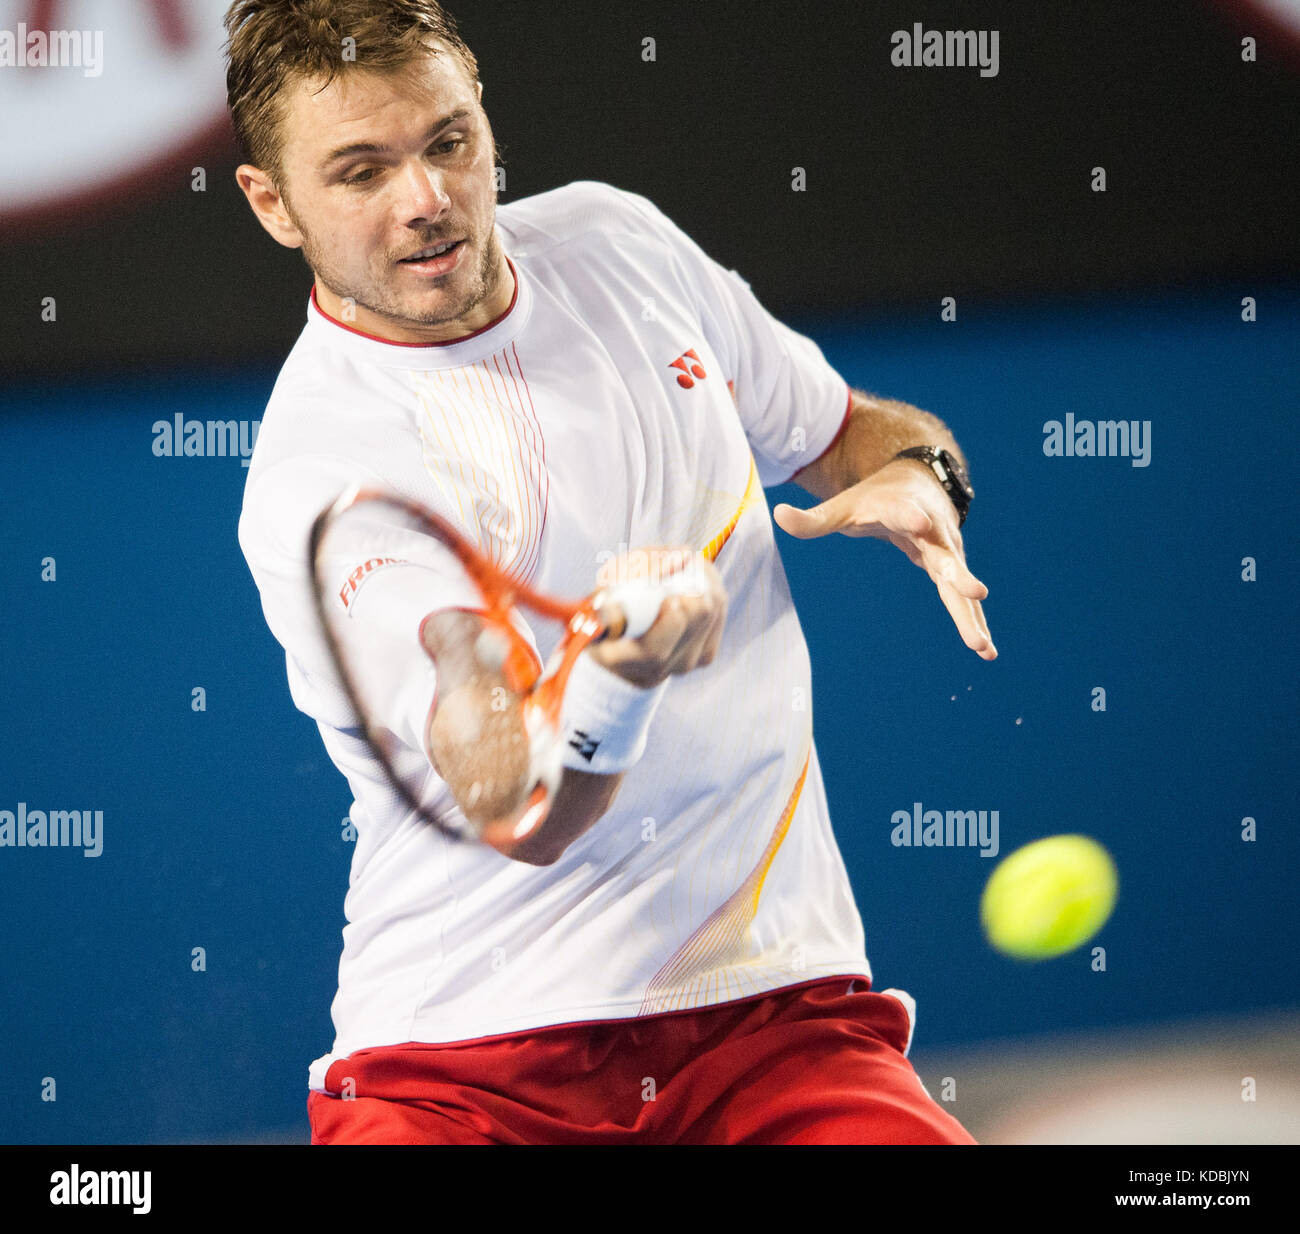 Stan Wawrinka en action contre N Djokovic à l'Open d'Australie Banque D'Images